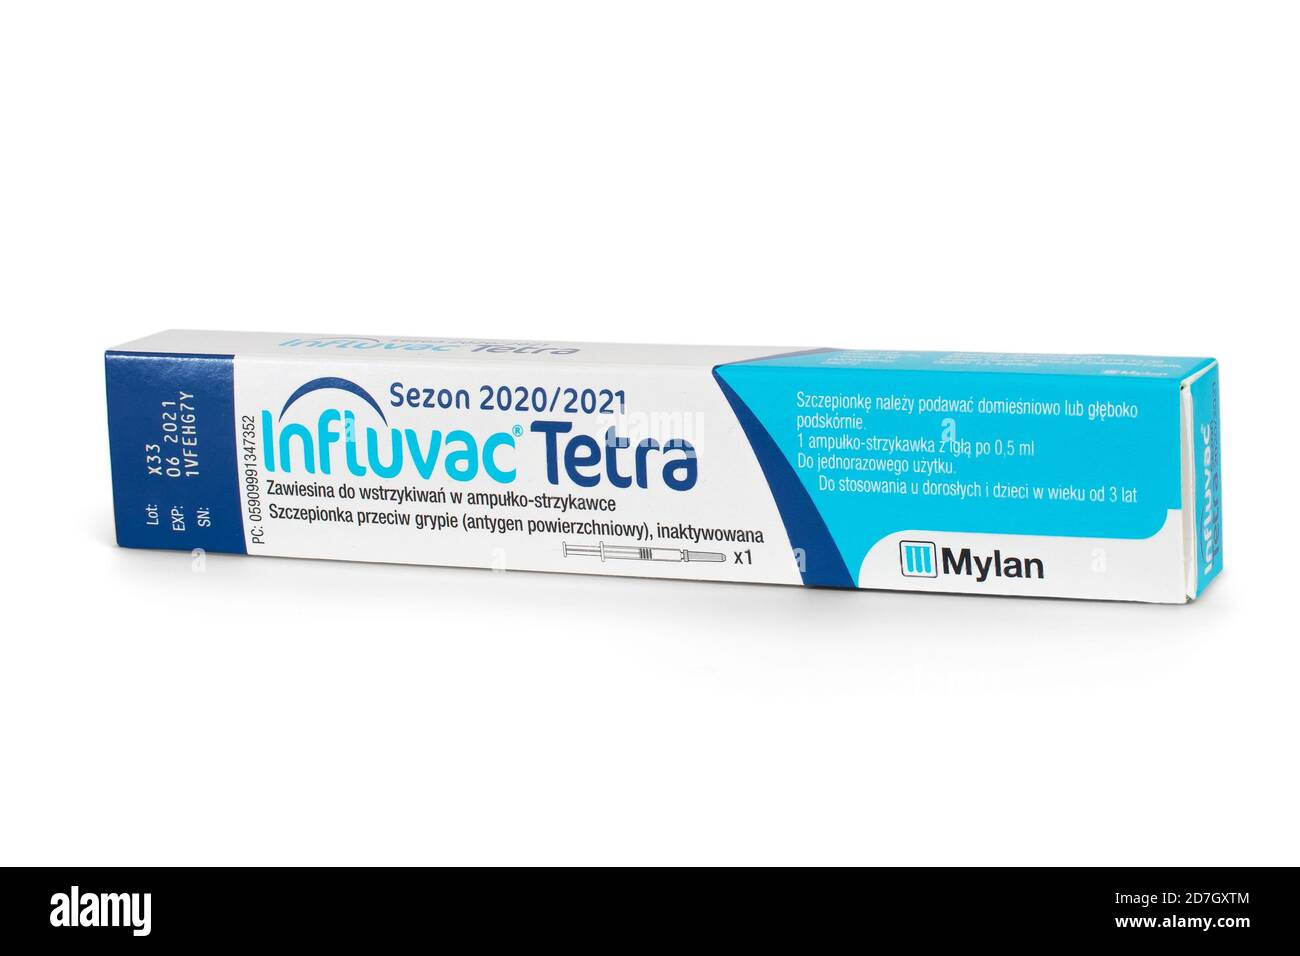 CRACOVIE, POLOGNE - 16 octobre 2020. Vaccin contre la grippe (nom commercial INFLUVAC Tetra) utilisé dans la prévention de la grippe en Pologne au cours de la saison 2020/2021 Banque D'Images